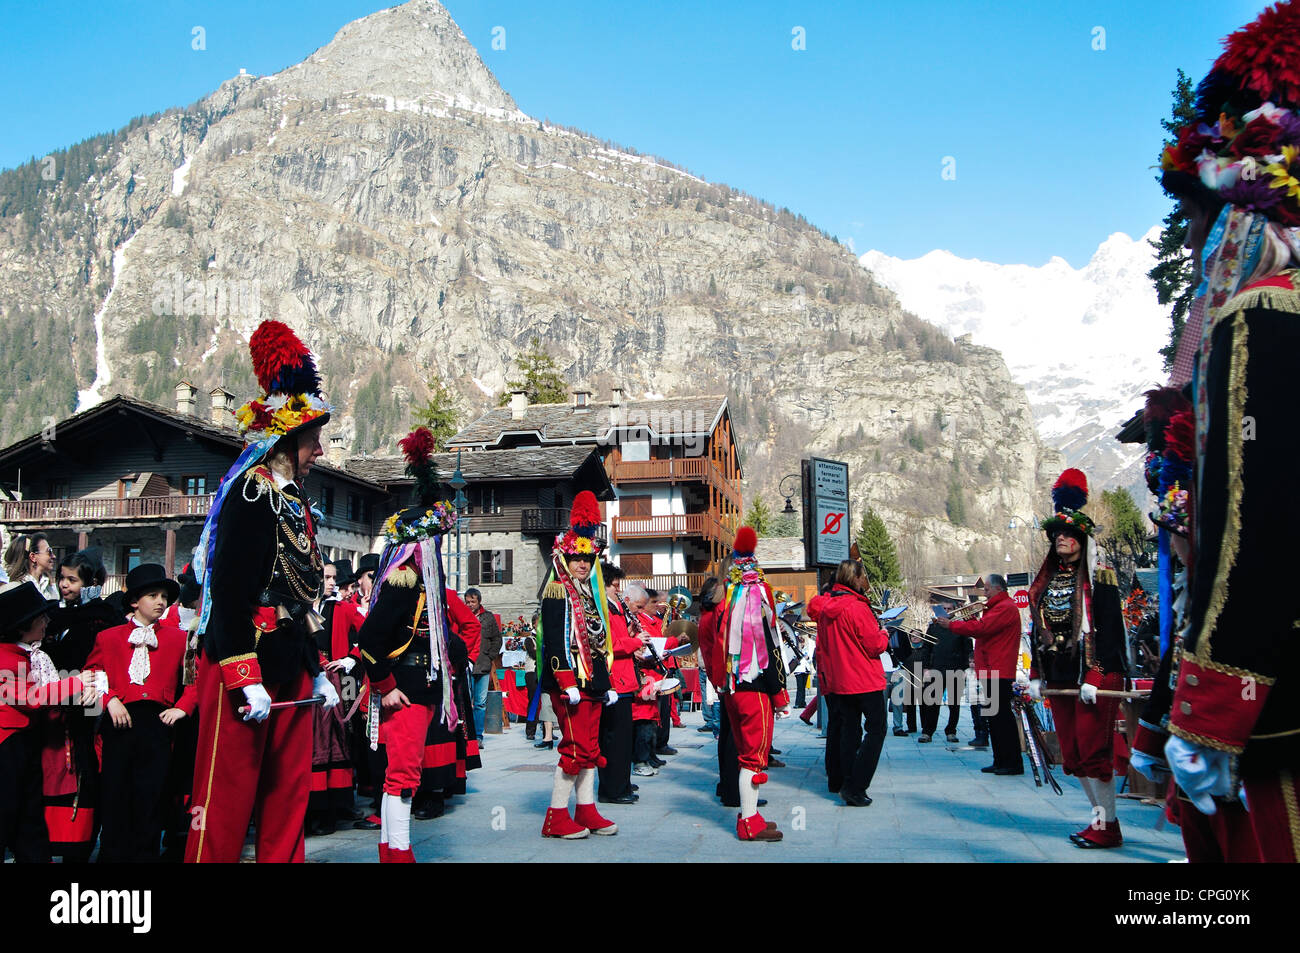 Italie, Val d'Aoste, Courmayeur, la Foire de la Paquerette, masque traditionnel avec des vêtements typiques Banque D'Images